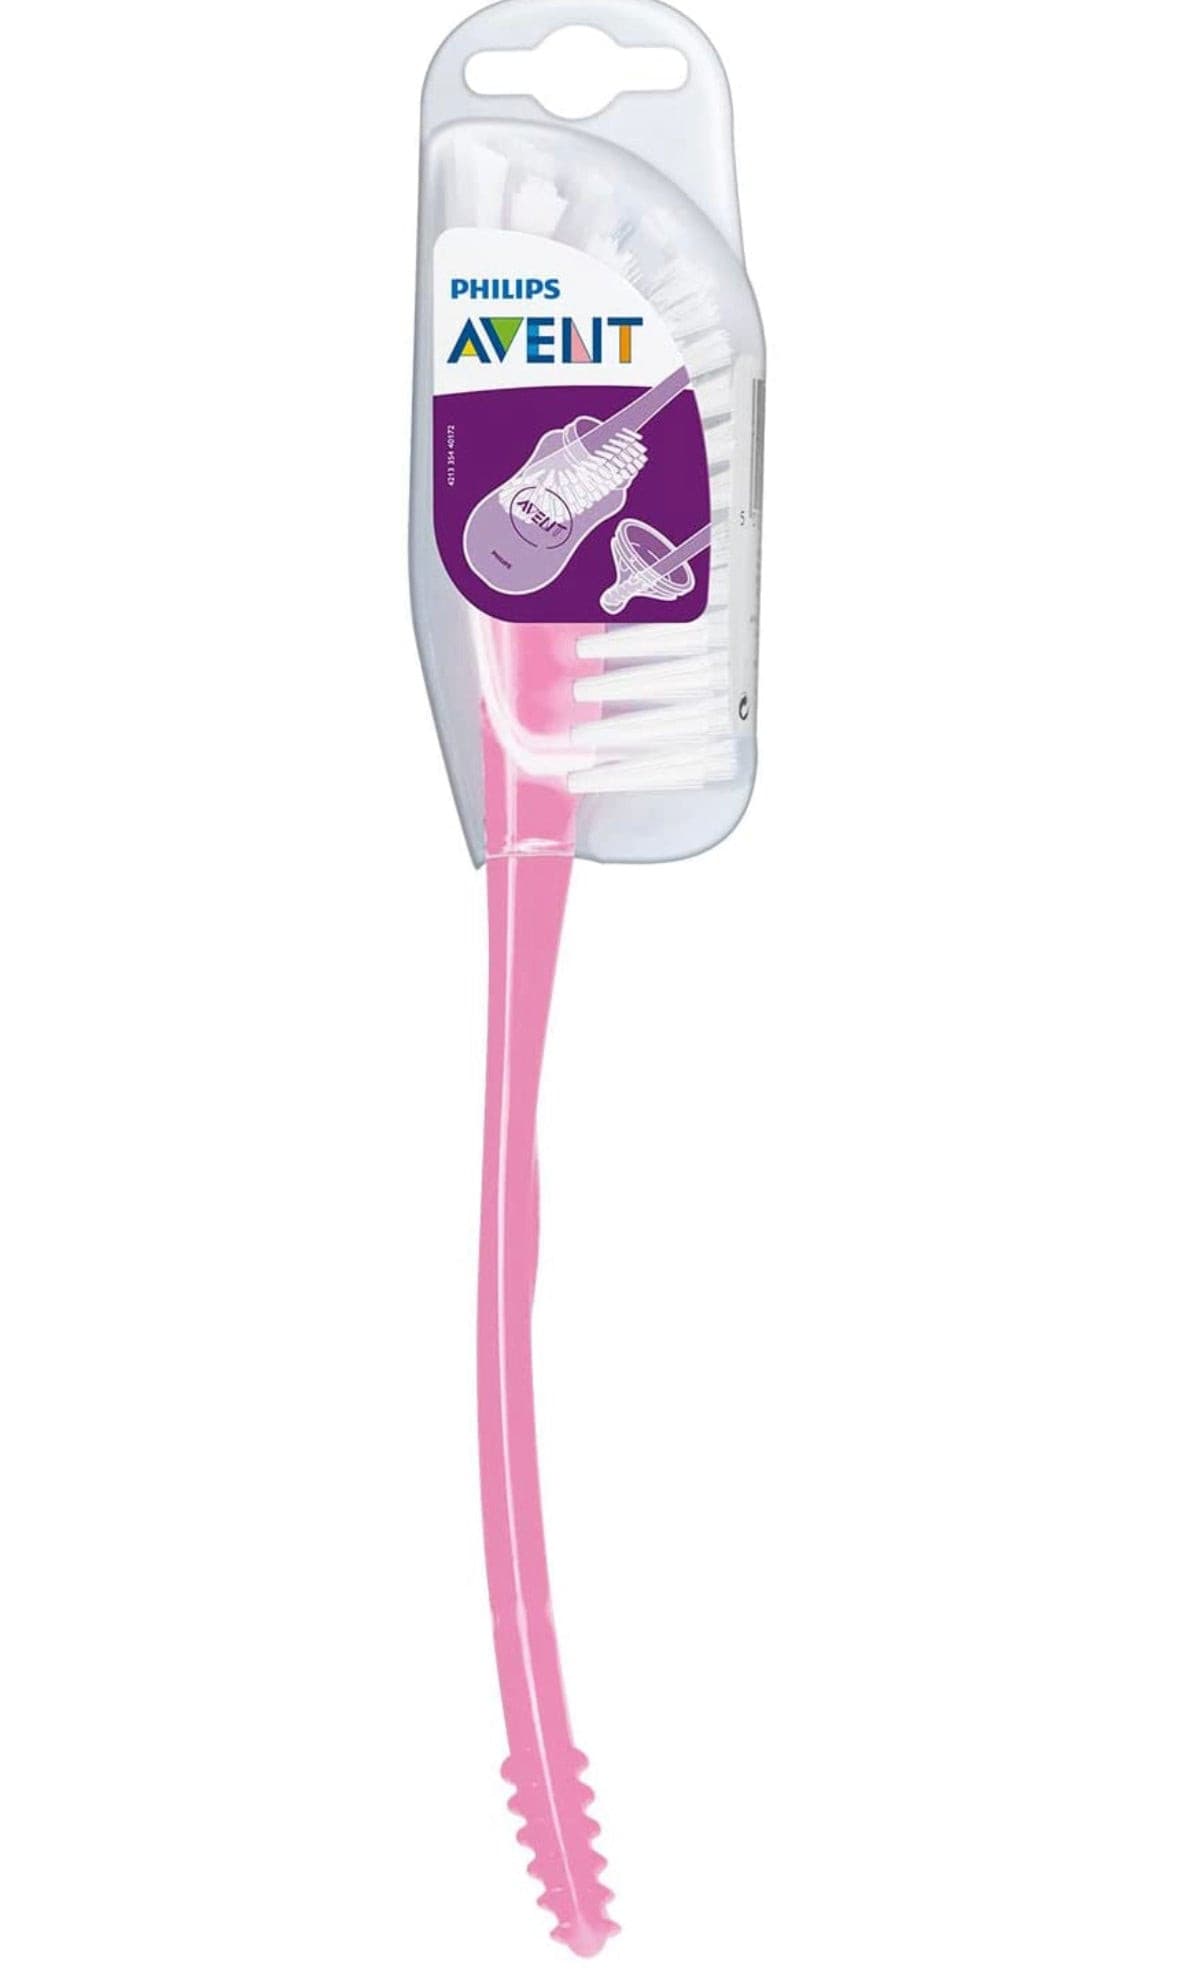 Philips Avent Bottle Brush, Pink.